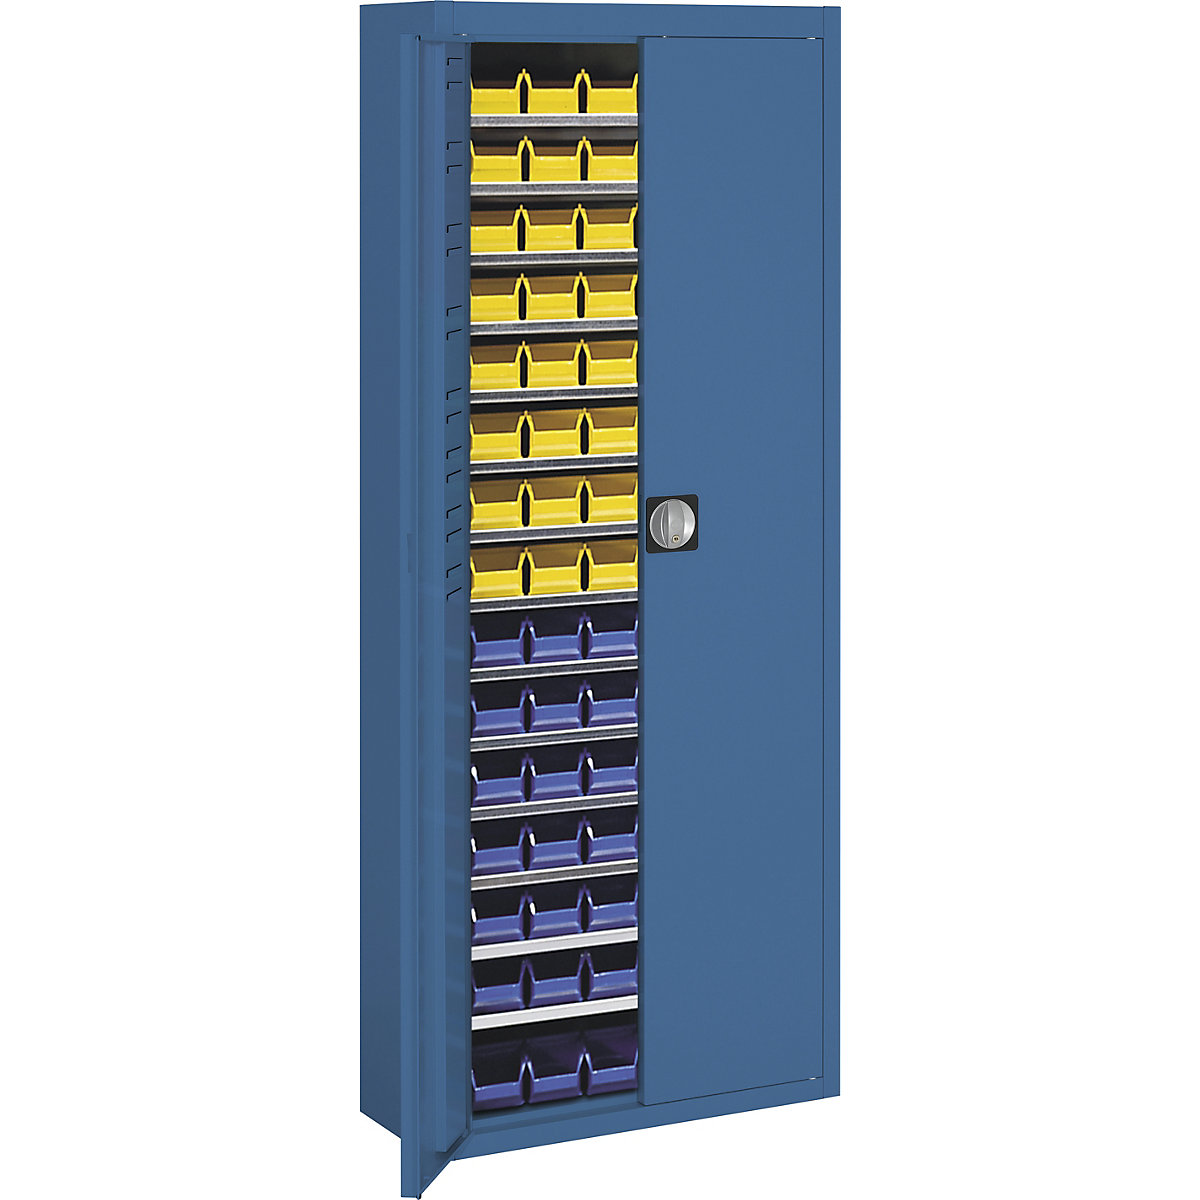 Armário de armazém com caixas de armazenagem à vista – mauser, AxLxP 1740 x 680 x 280 mm, unicolor, azul, 90 caixas-11